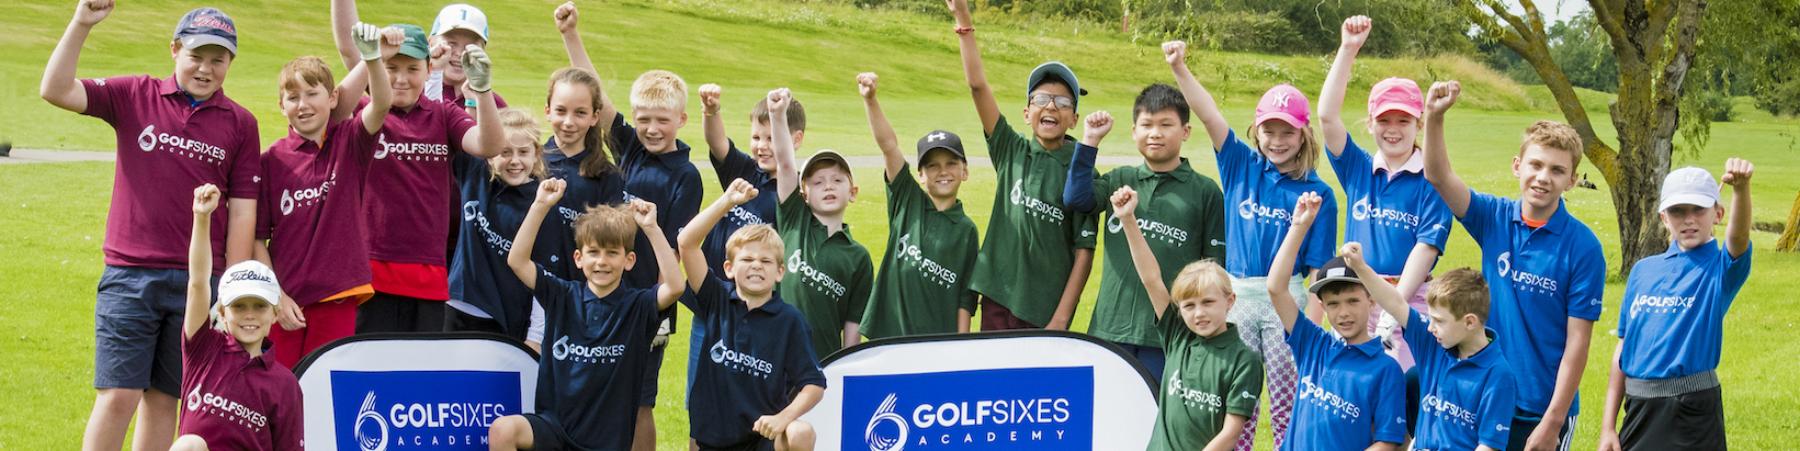 GolfSixes teams,crop please credit Leaderboard Photography